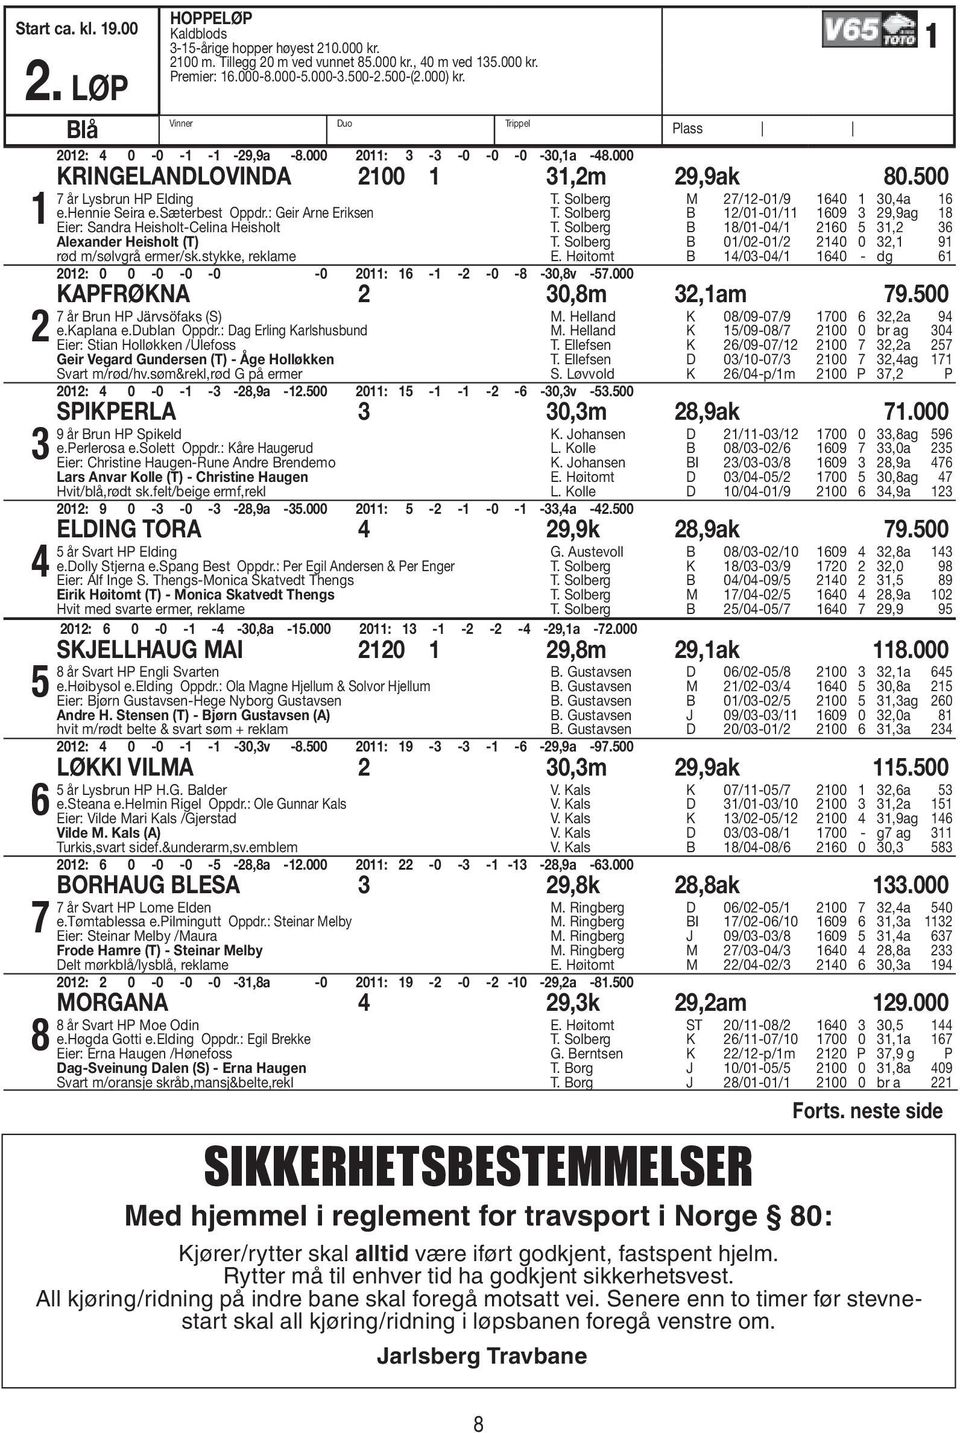 : Geir Arne Eriksen Eier: Sandra Heisholt-Celina Heisholt alexander Heisholt (T) rød m/sølvgrå ermer/sk.stykke, reklame 0: 0 0-0 -0-0 -0 0: - - -0-8 -0,8v -.000 T. Solberg M /-0/9 0 0,a T.